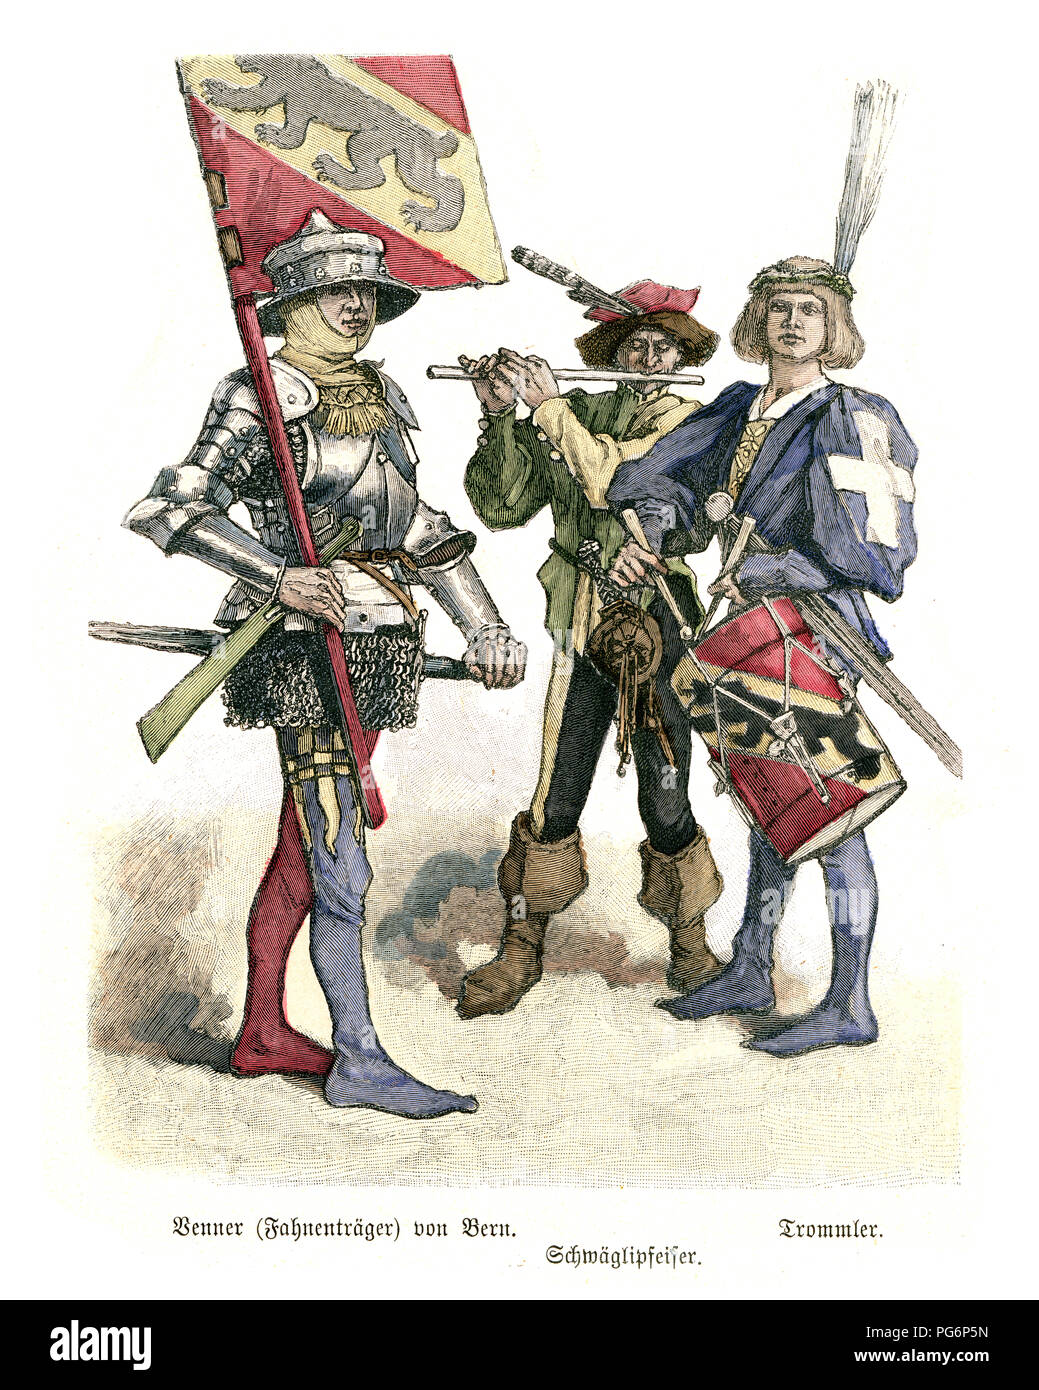 La mode de l'époque médiévale, porte-drapeau de la Suisse Berne, le batteur et joueur de fifre Banque D'Images